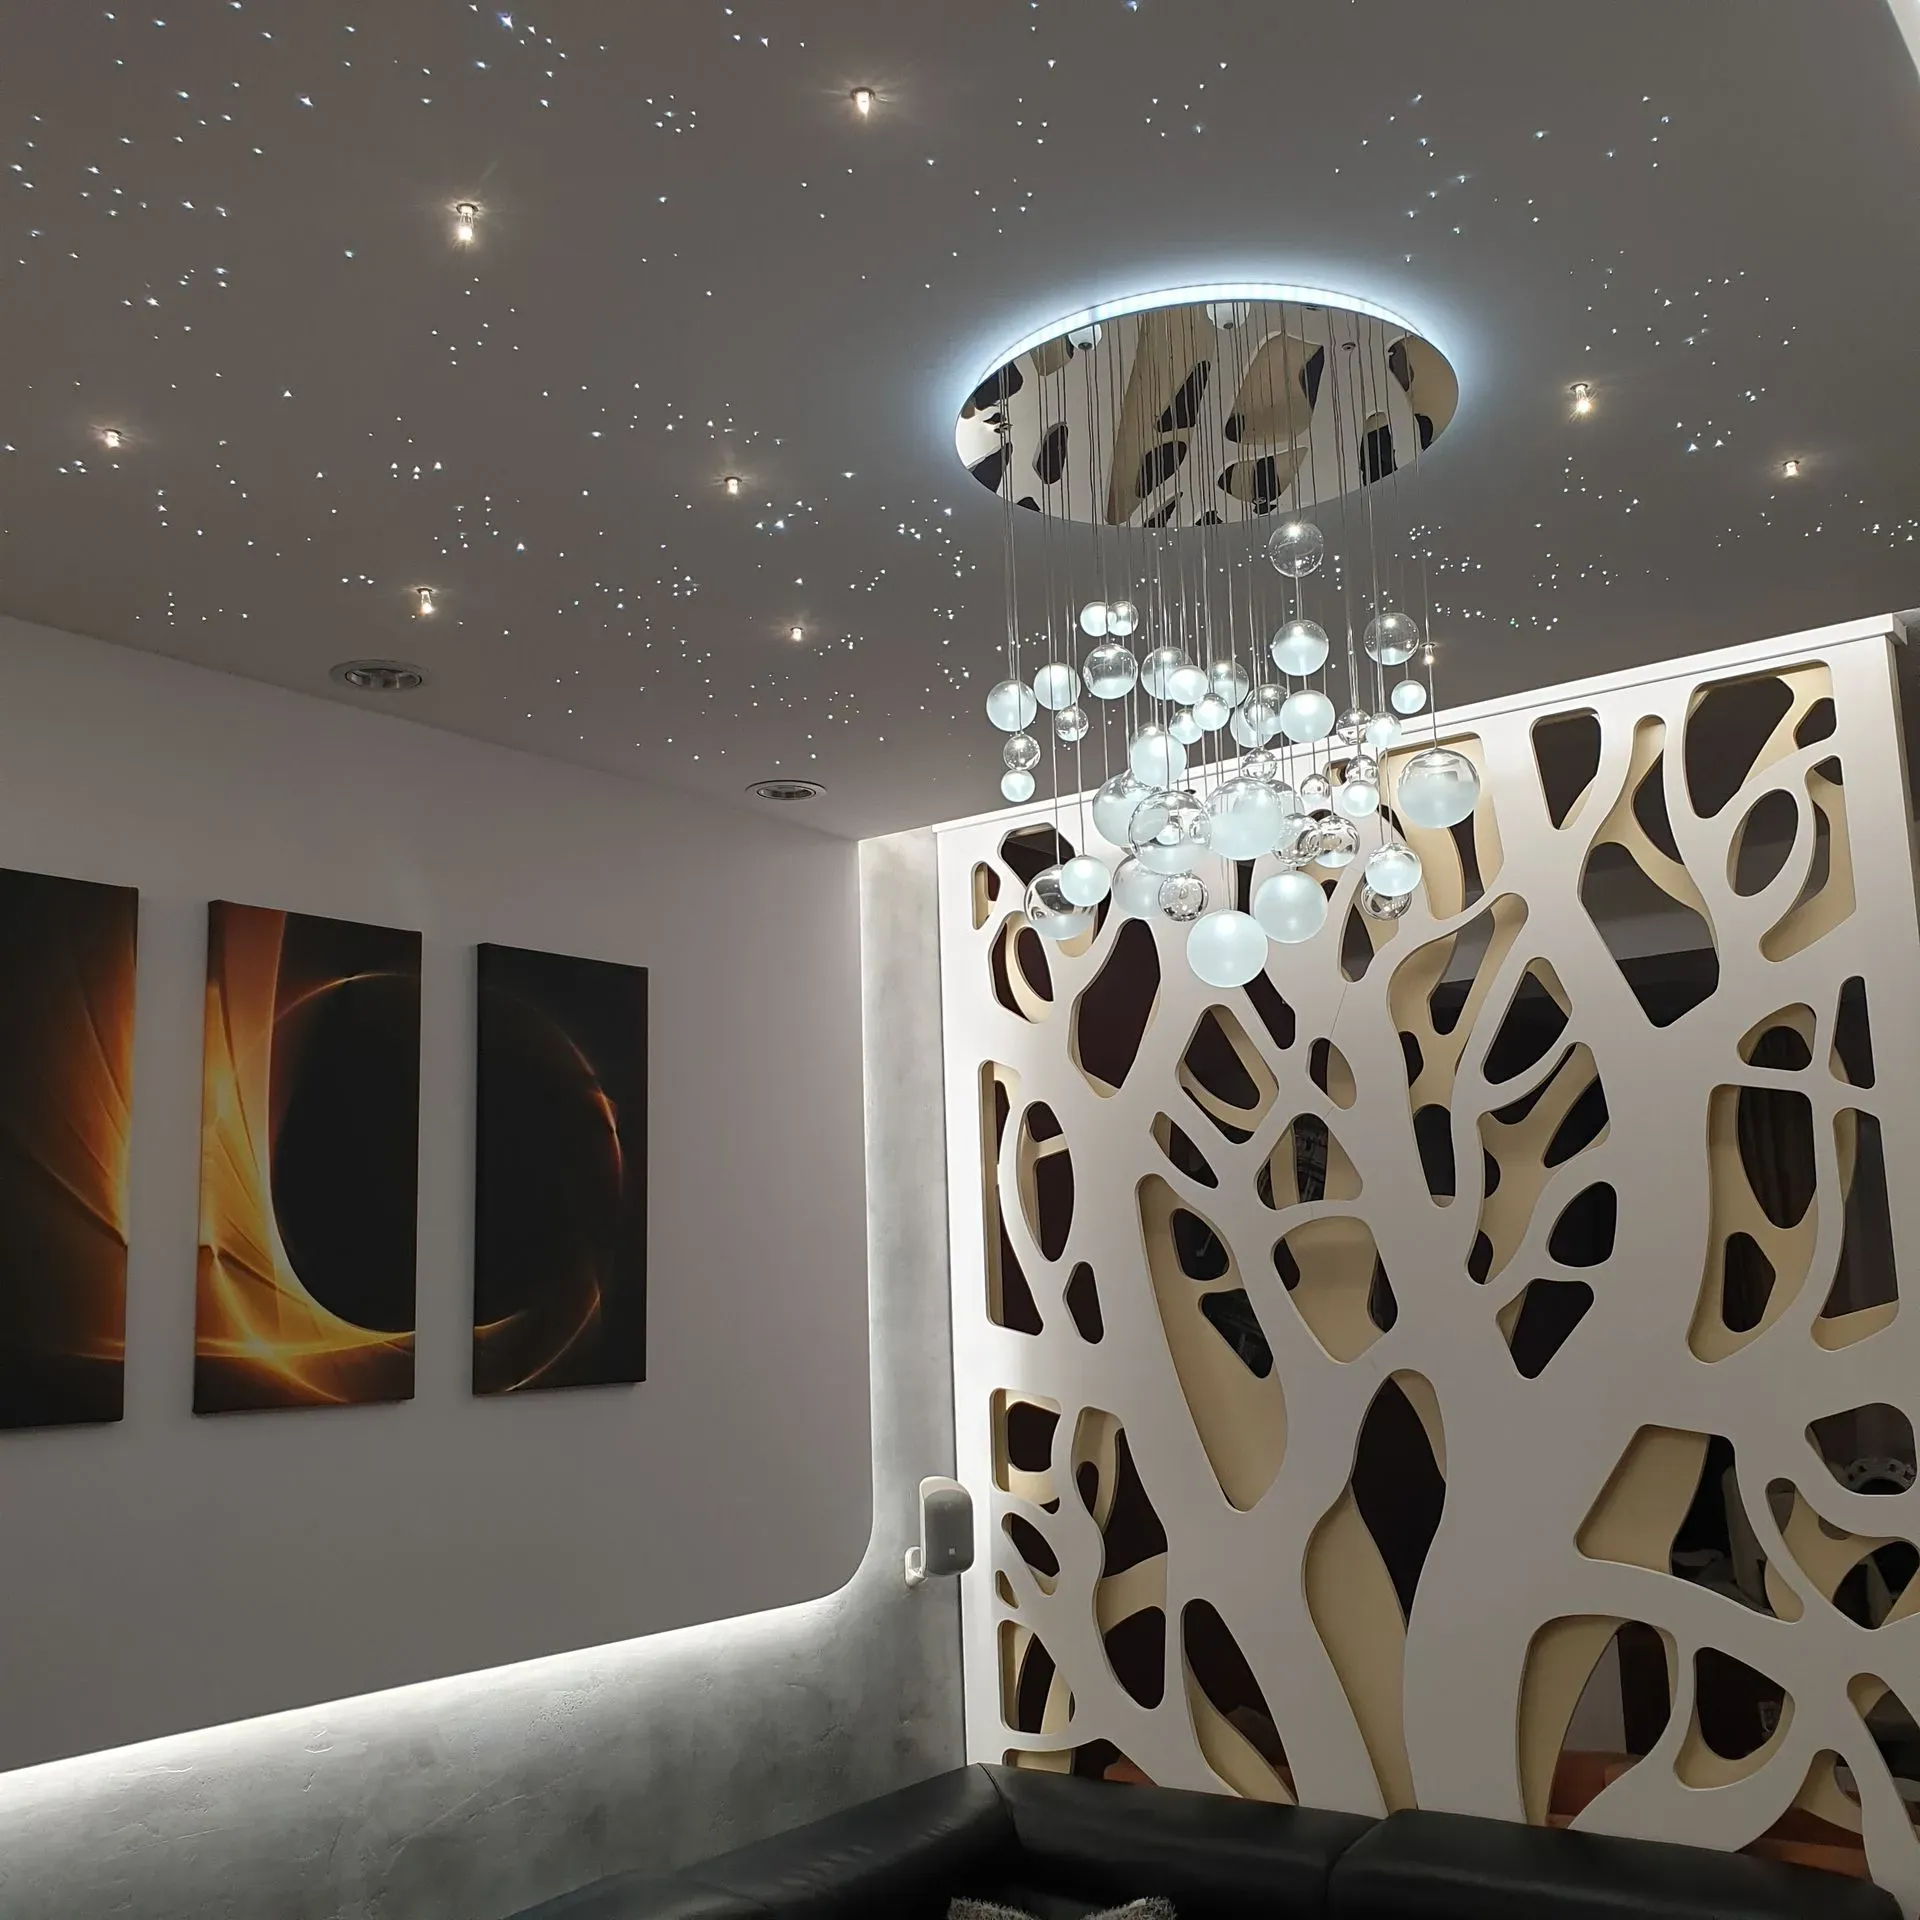 Modern LED chandelier in bedroom, livingroom, hallway, with CCT adjustable LED lighting